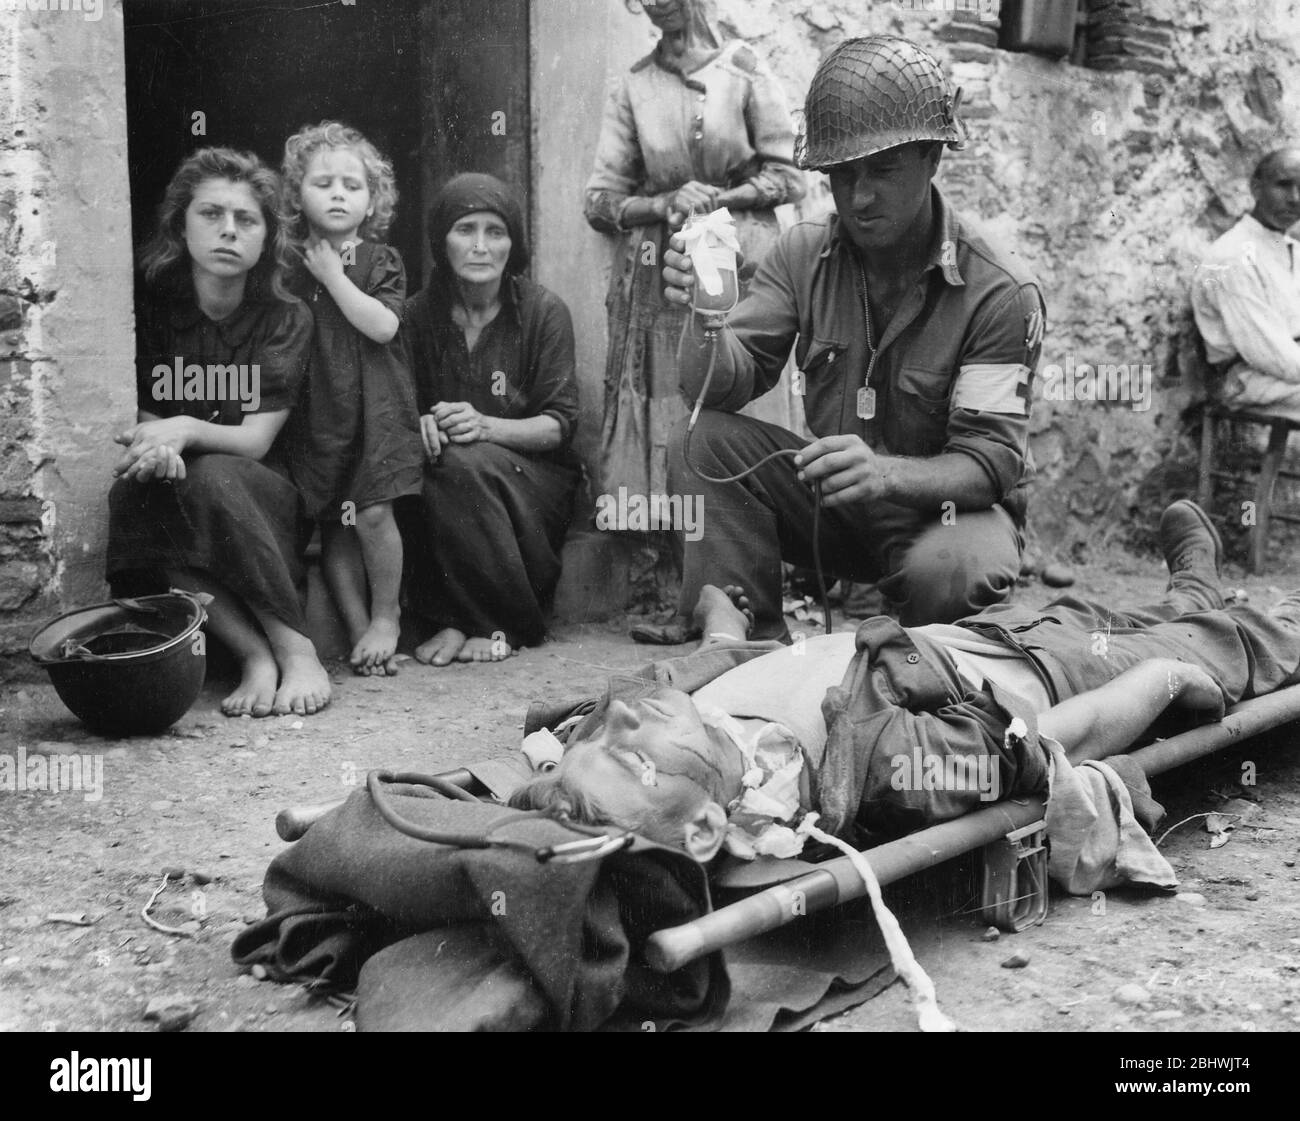 Un soldat reçoit du plasma sanguin après qu'il a été blessé par un shrapnel en Sicile le 9 août 1943 Banque D'Images